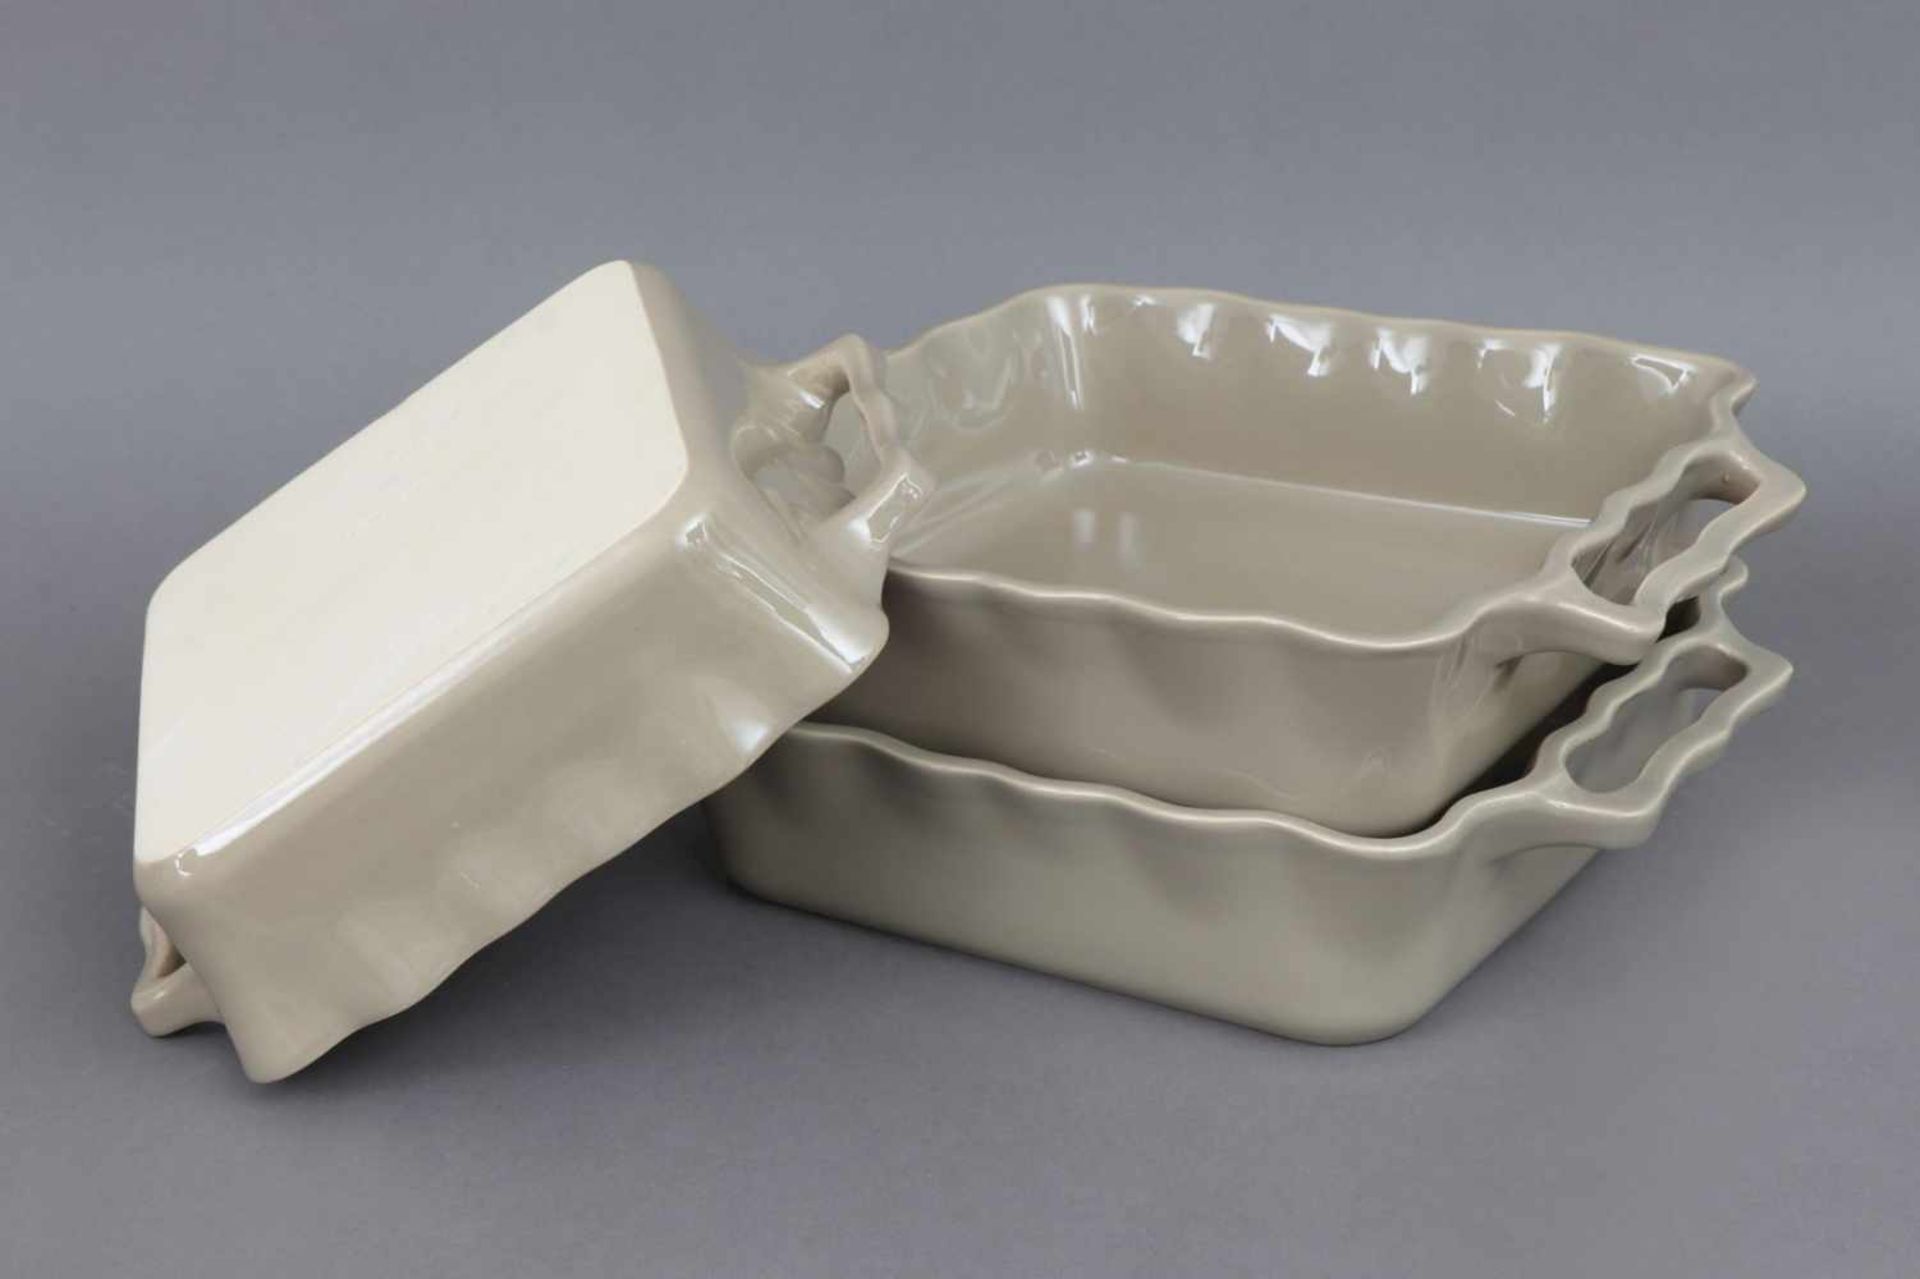 3 APPOLIA Keramik Ofenformen greige glasierte, eckige Schalen mit leicht welligem Rand und - Image 2 of 3